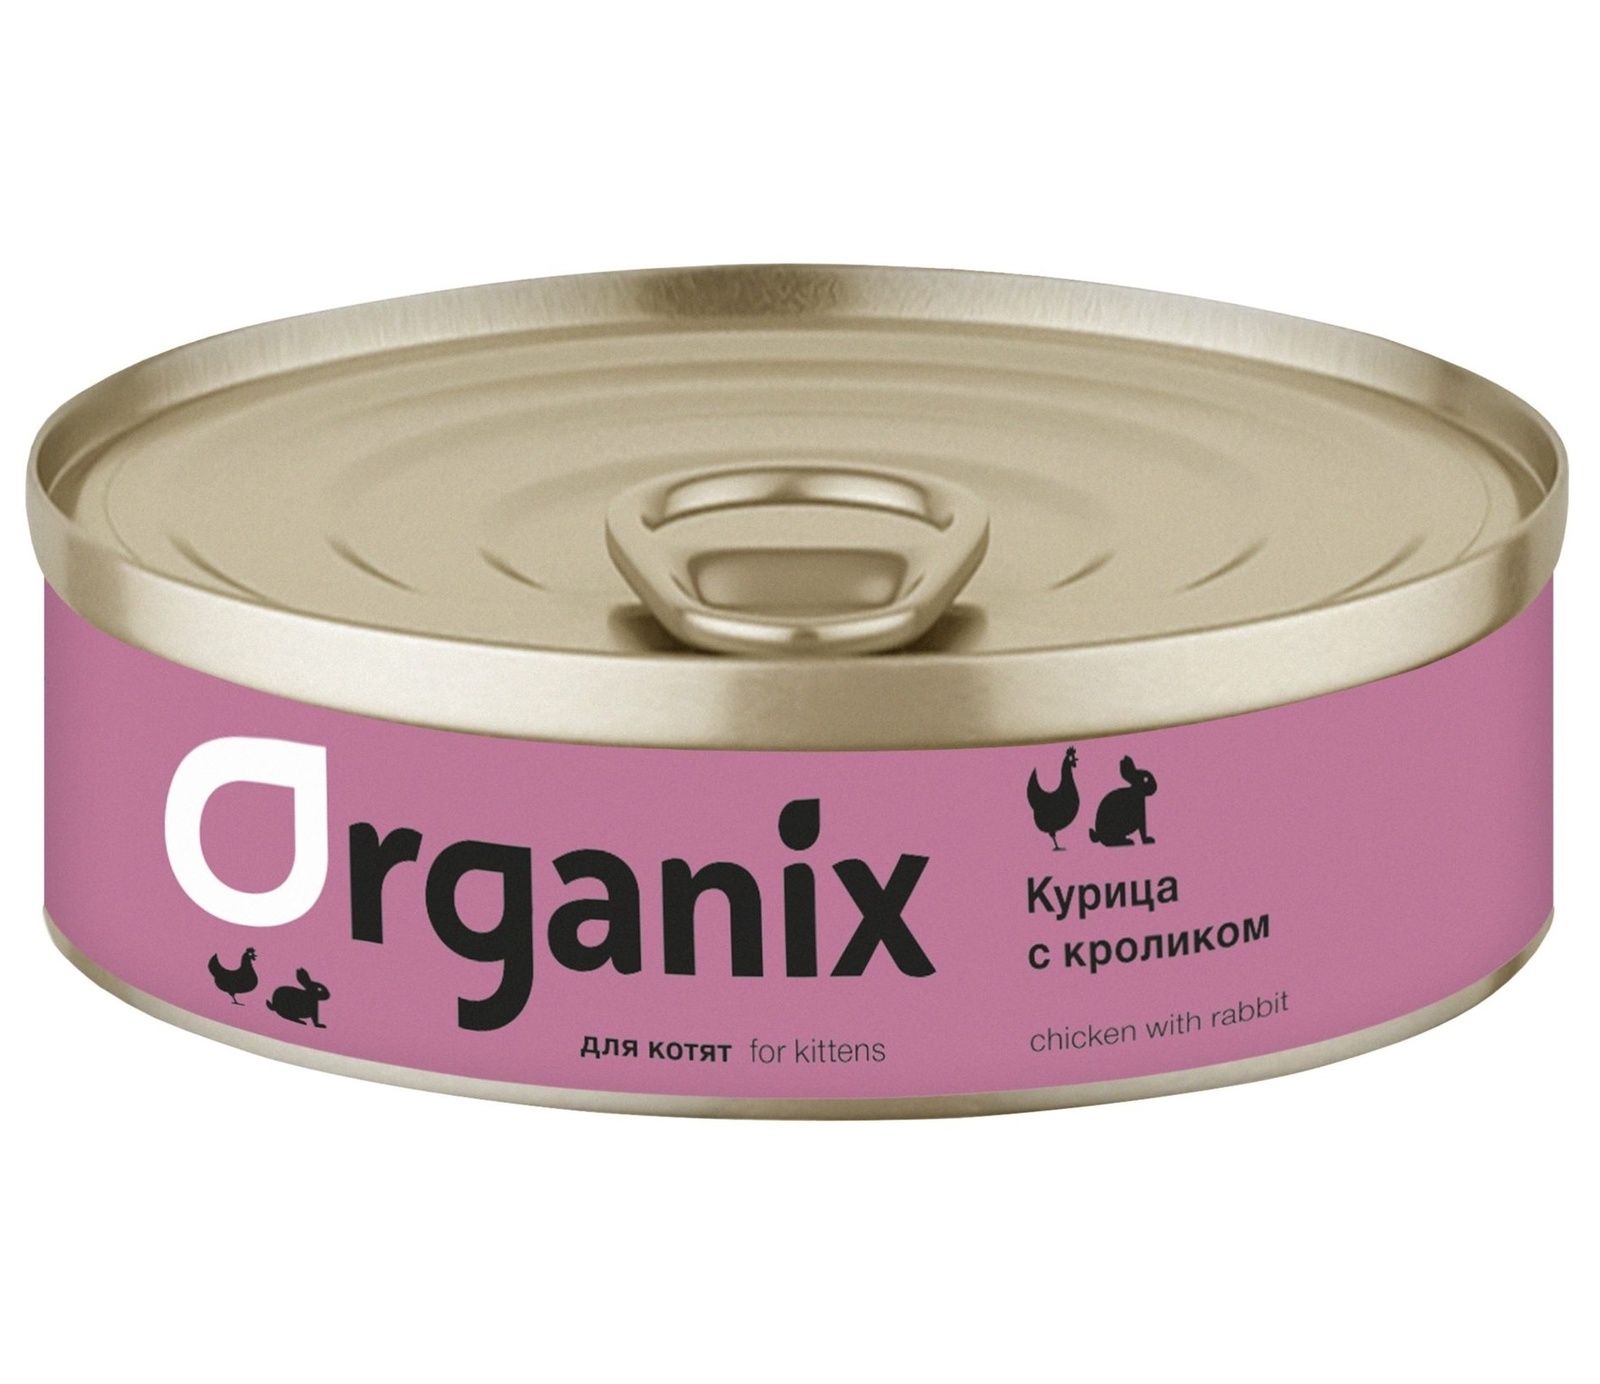 Organix консервы Organix консервы с курочкой и кроликом для котят (100 г) organix консервы organix консервы для щенков мясное ассорти с кроликом 100 г